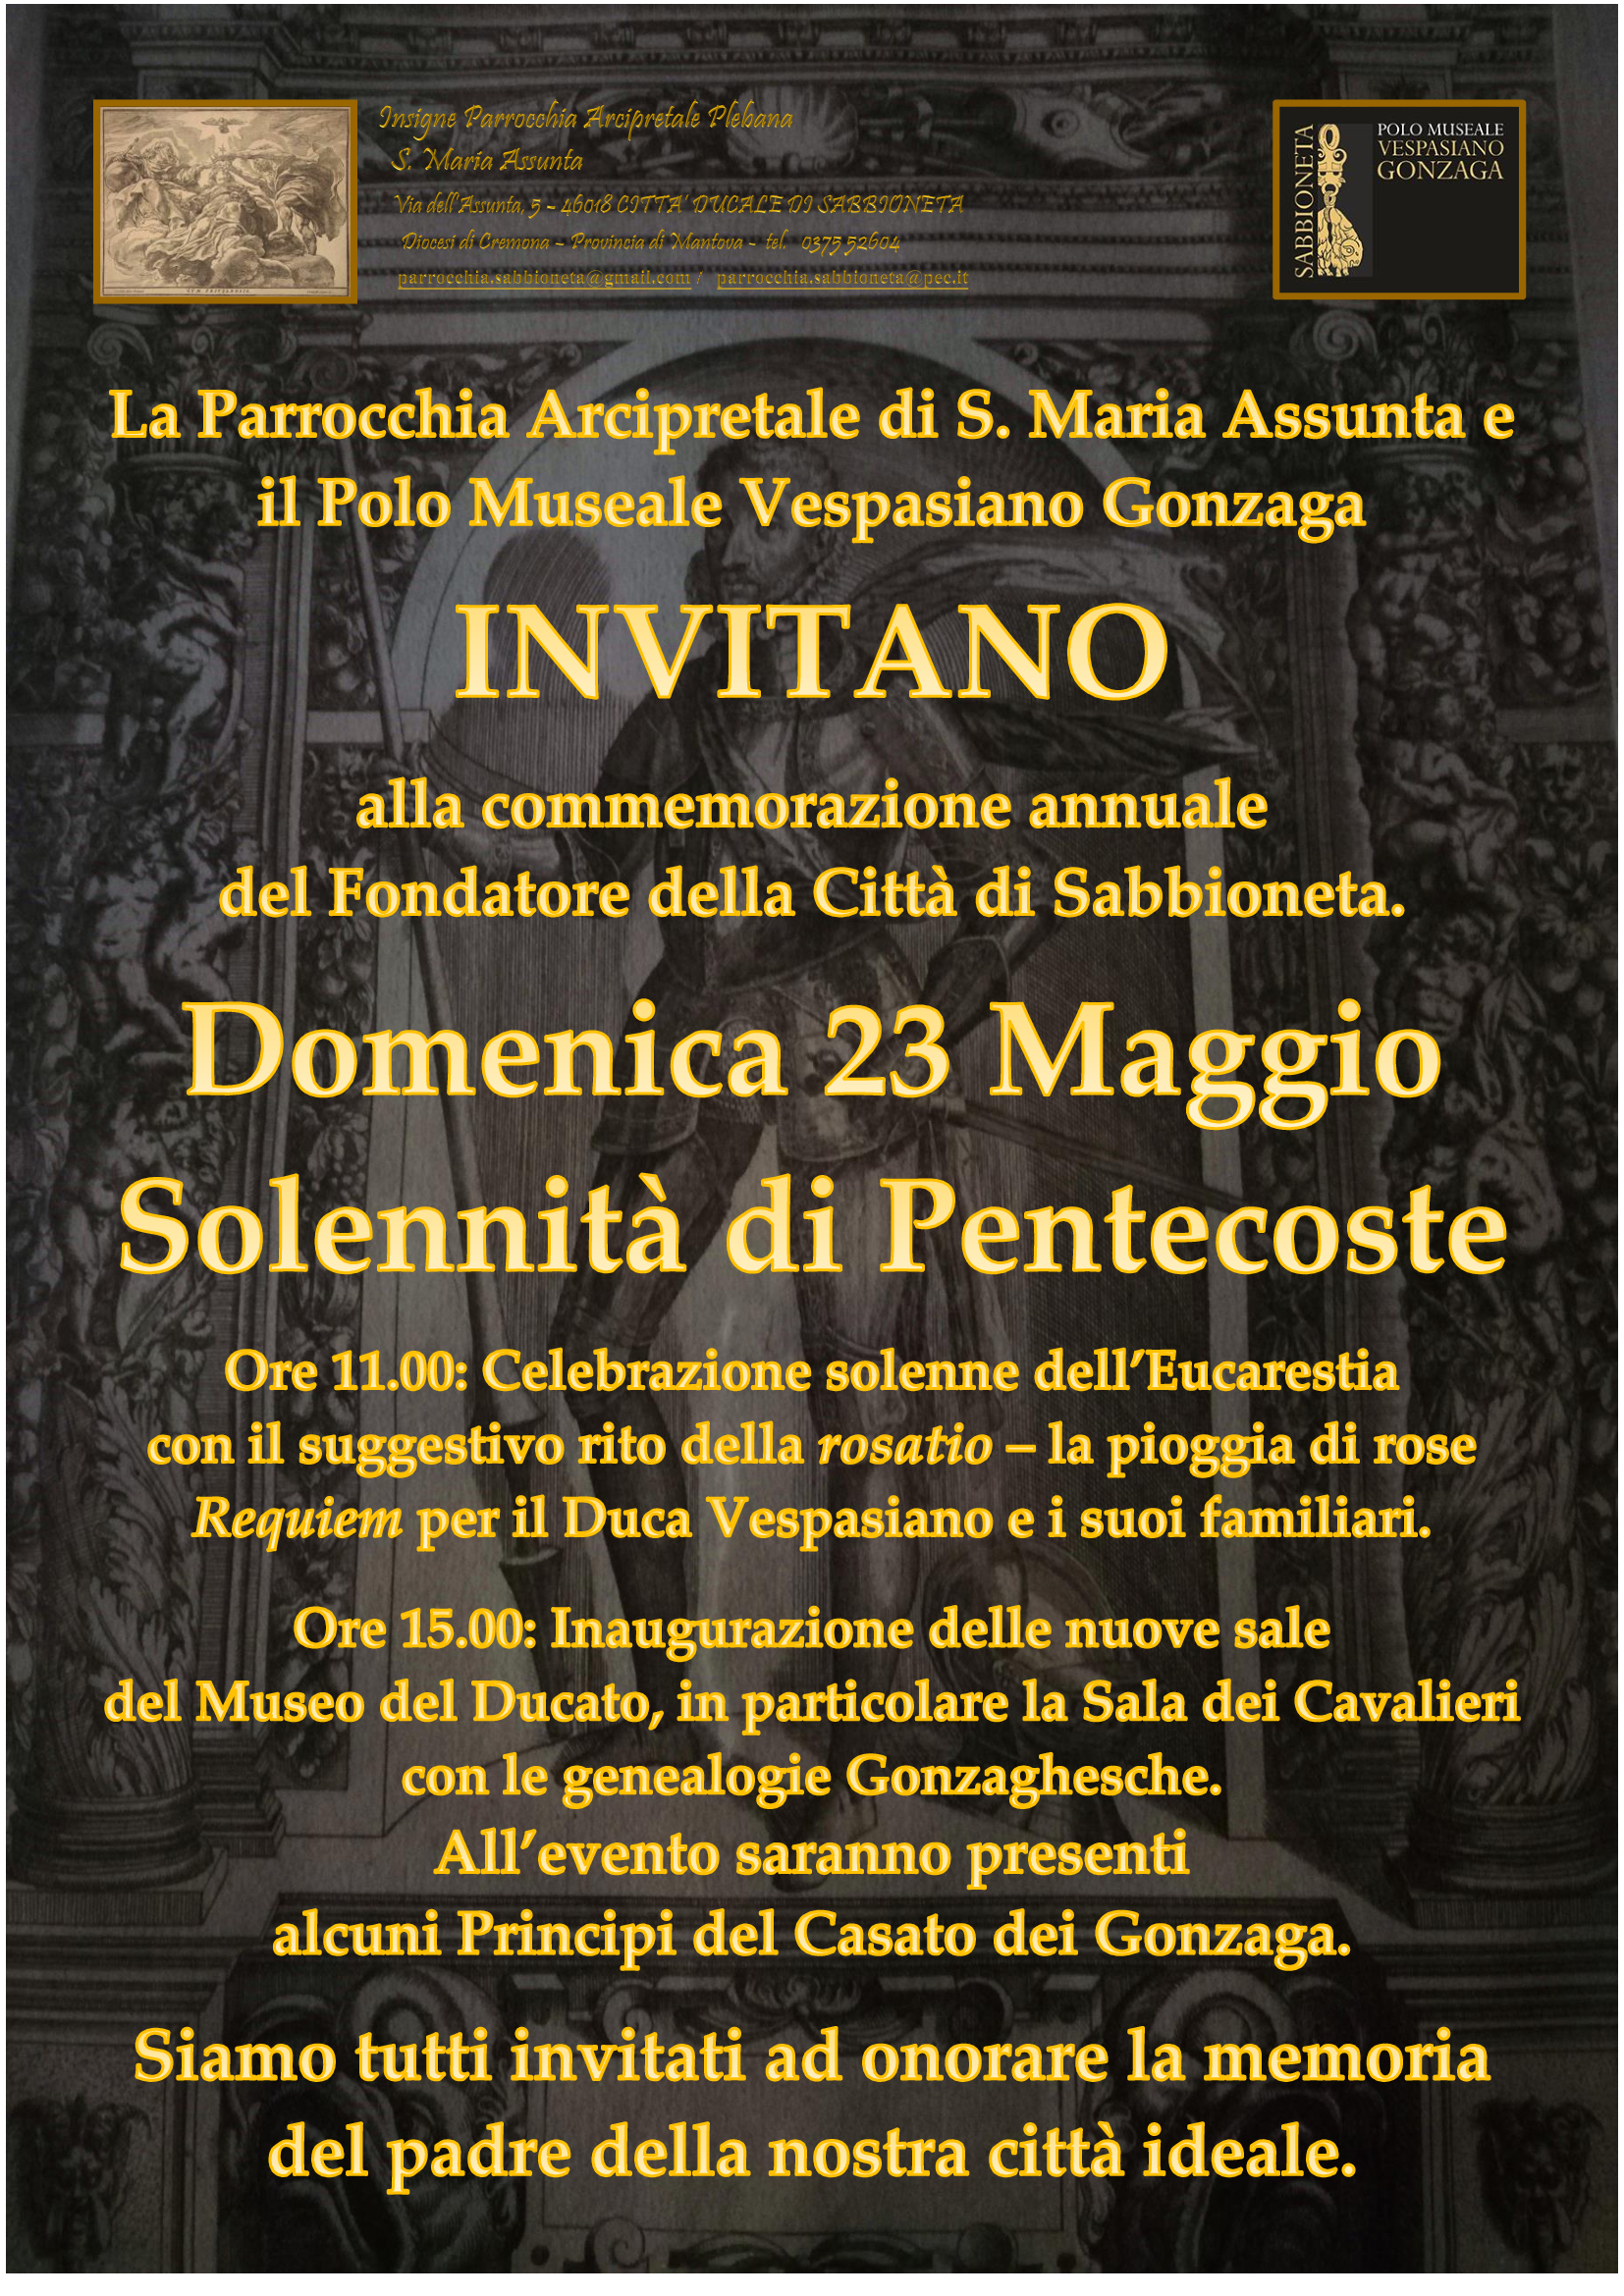 23 maggio 2021 - Requiem per Vespasiano Gonzaga ed inaugurazione nuove sale del Museo del Ducato